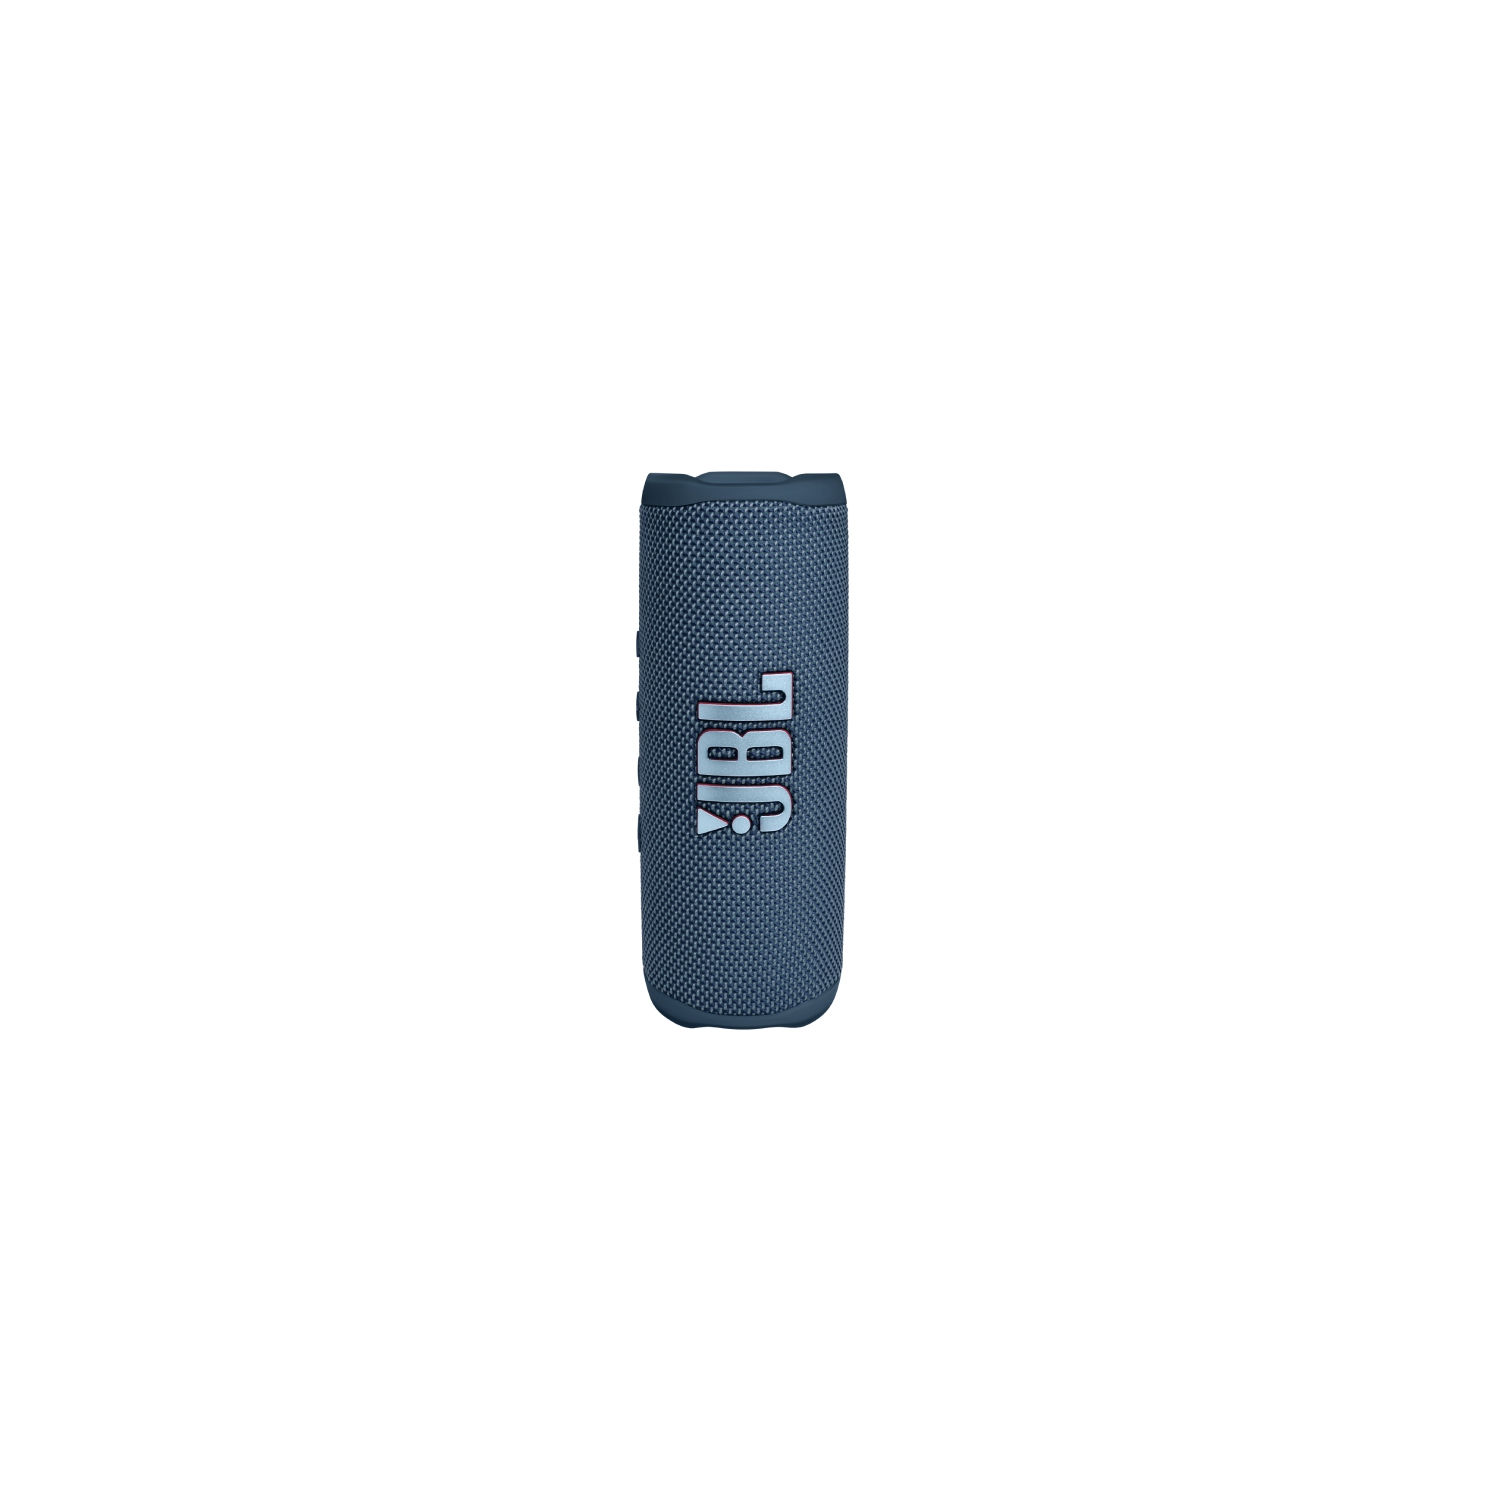 JBL Flip 6 Portable Waterproof Speaker In Blue - JBLFLIP6BLUAM Seller Provided Warranty Included